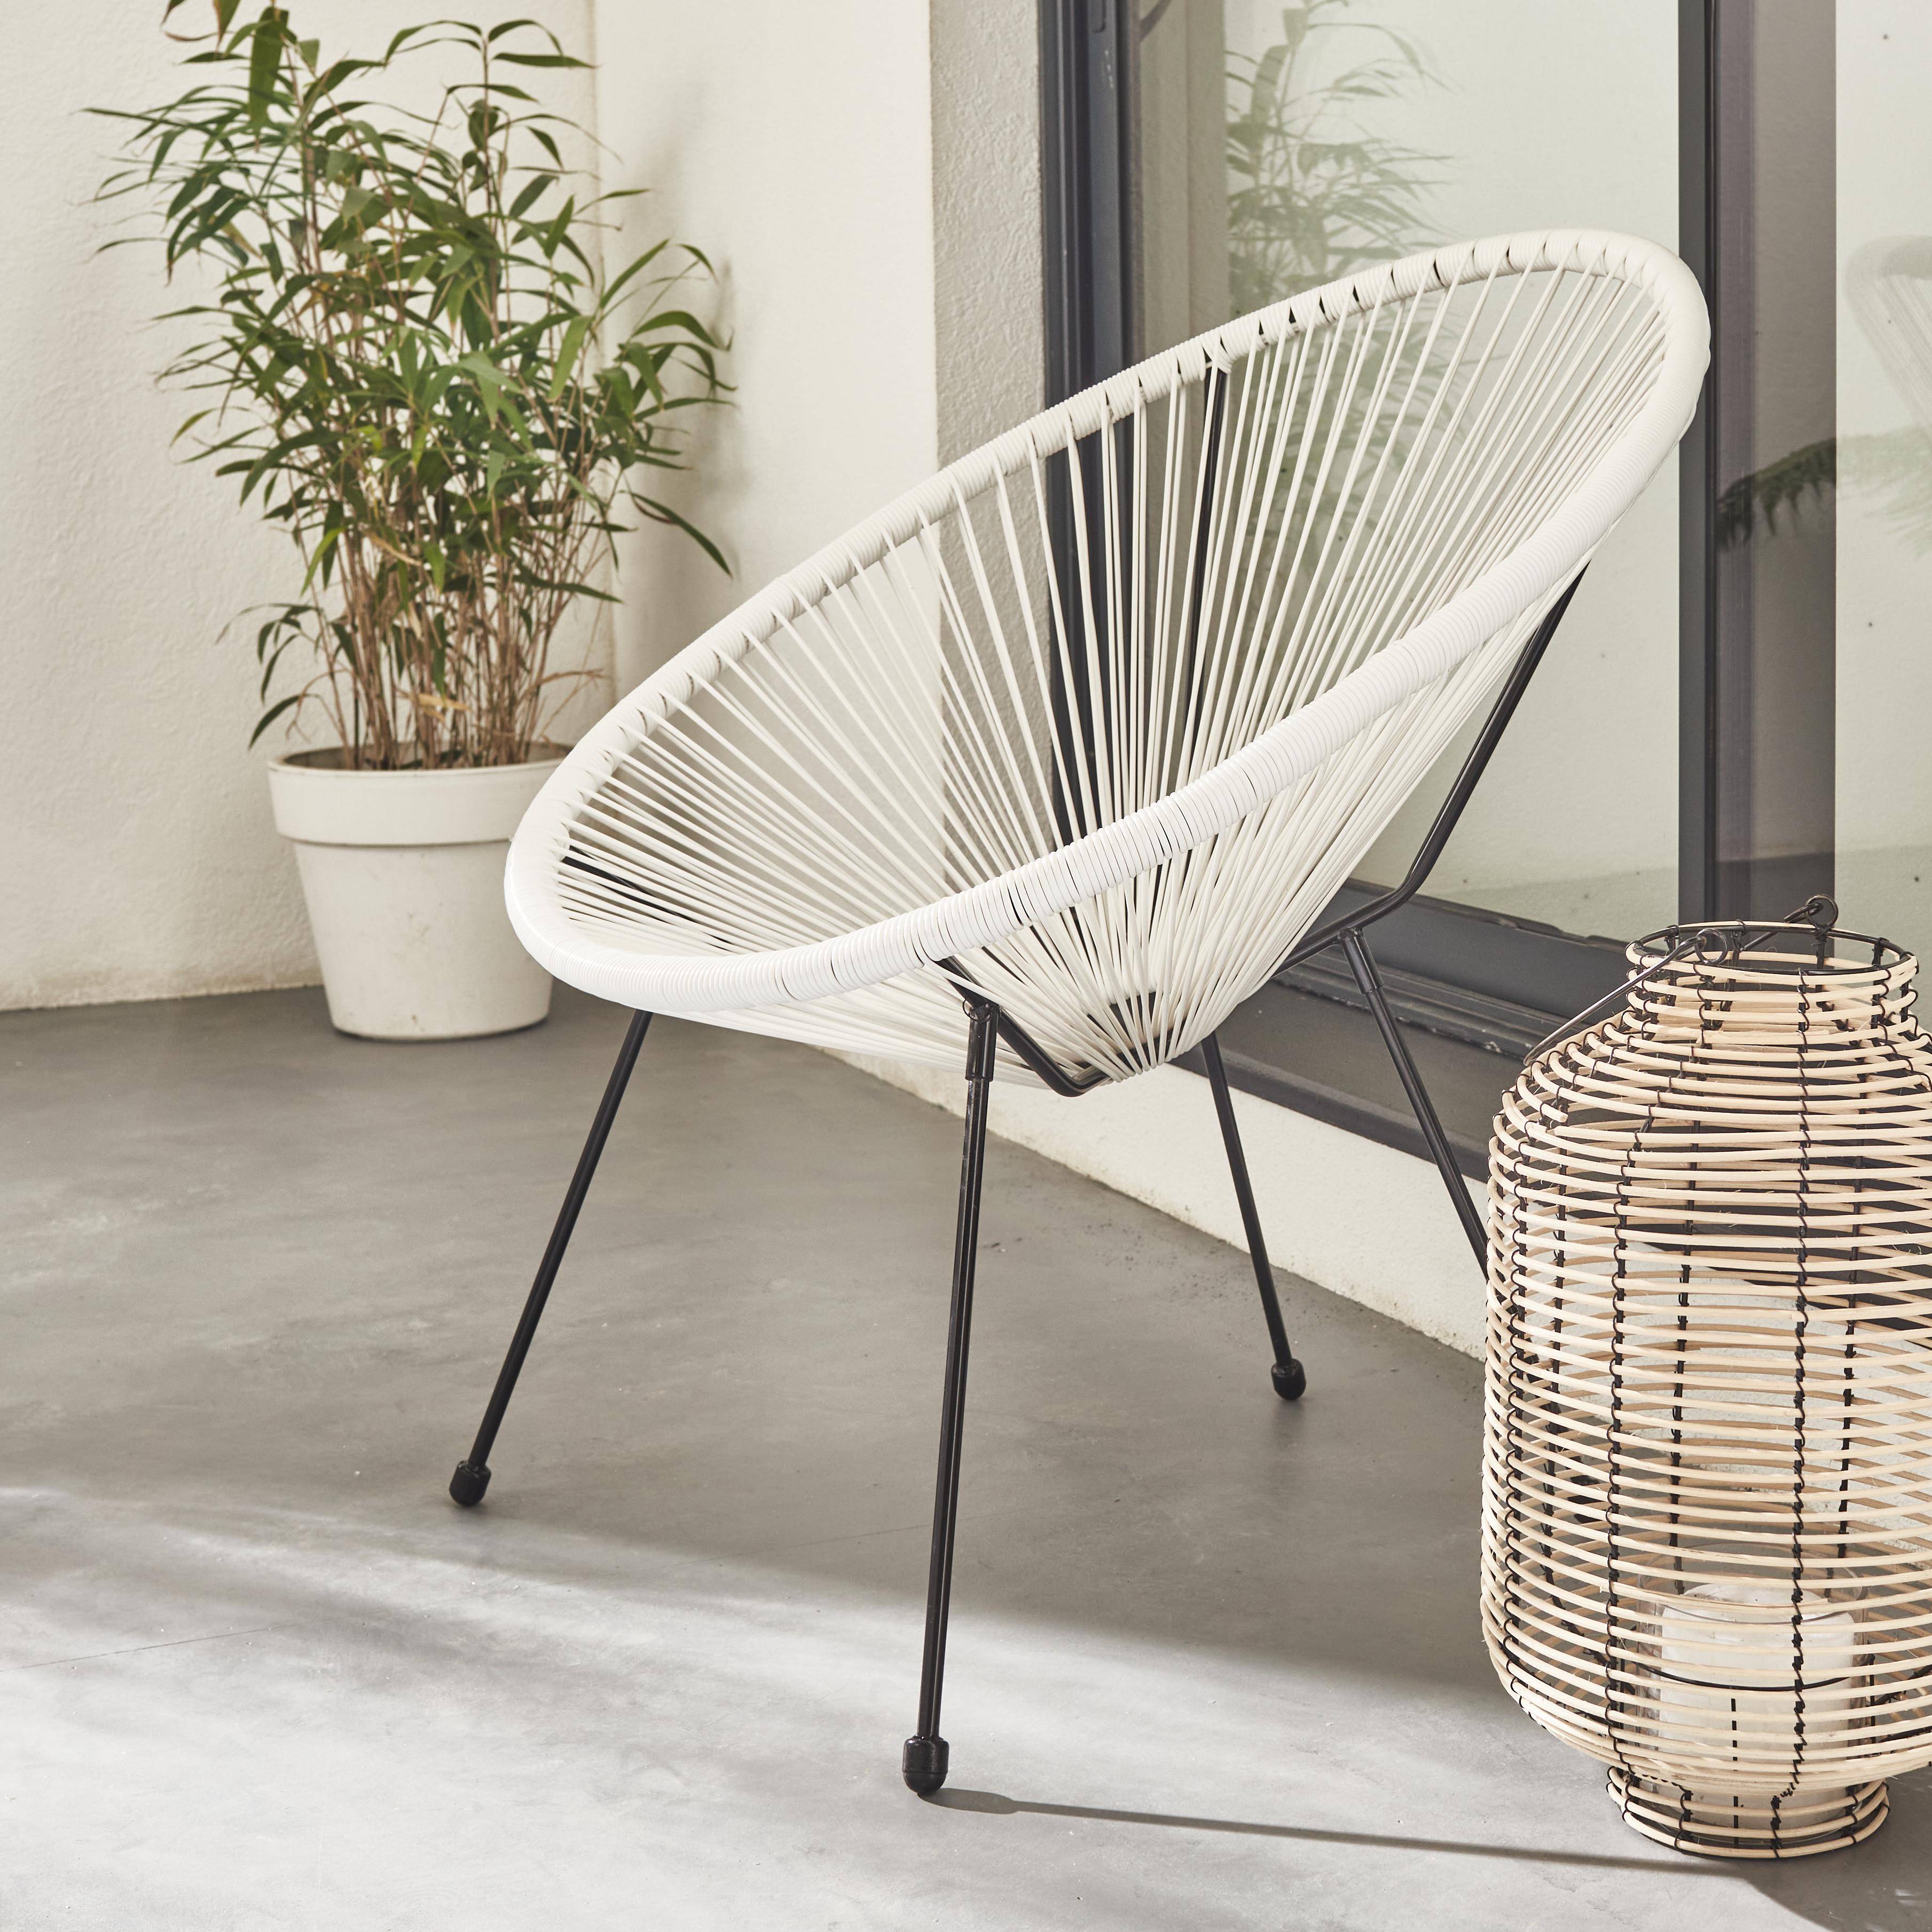 ACAPULCO stoel ei-vormig - Wit- Stoel 4 poten retro design, plastic koorden, binnen/buiten Photo1